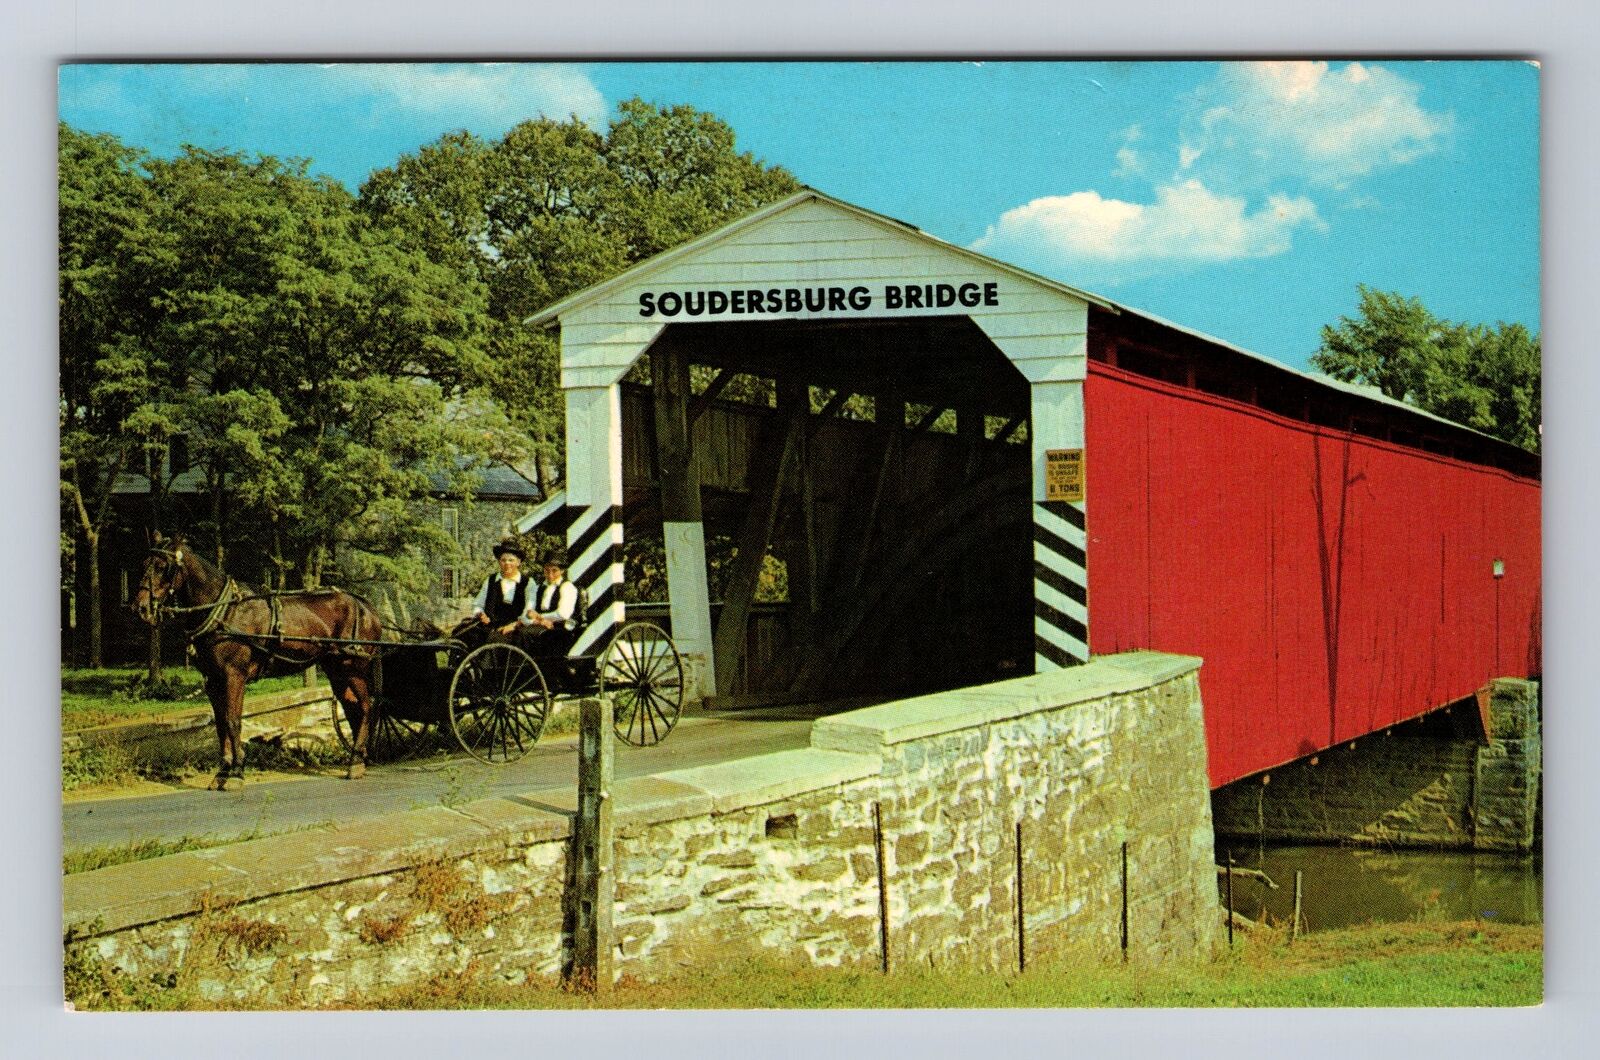 Ronks PA-Pennsylvania, The Soudersburg Bridge, Antique Souvenir Vintage Postcard